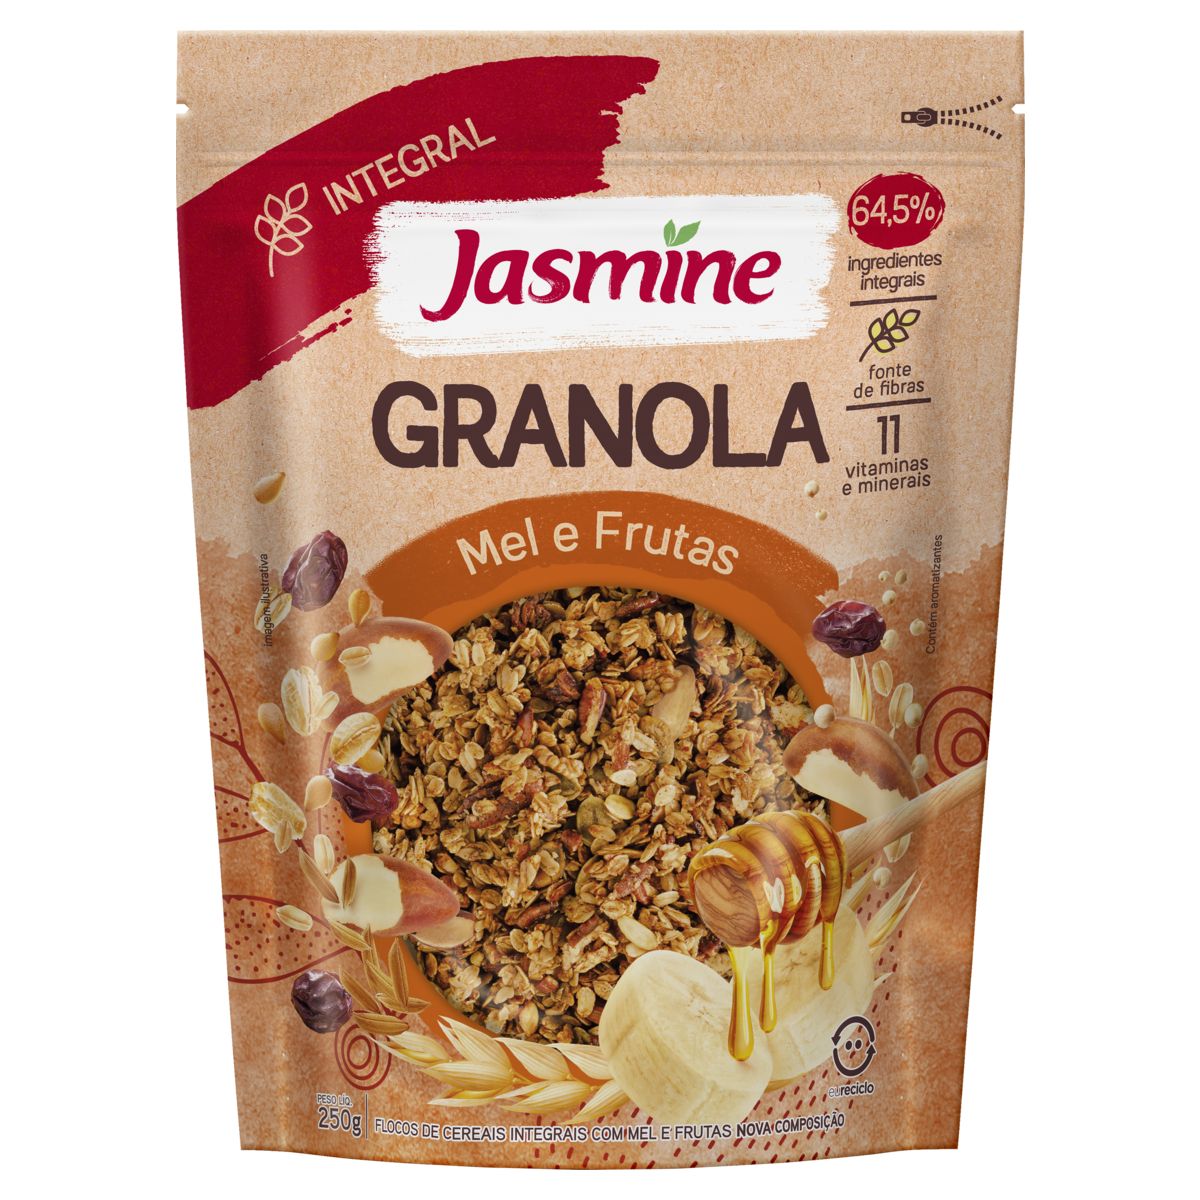 Granola Jasmine Mel e Frutas 64,5% Integral Pouch 250g image number 0